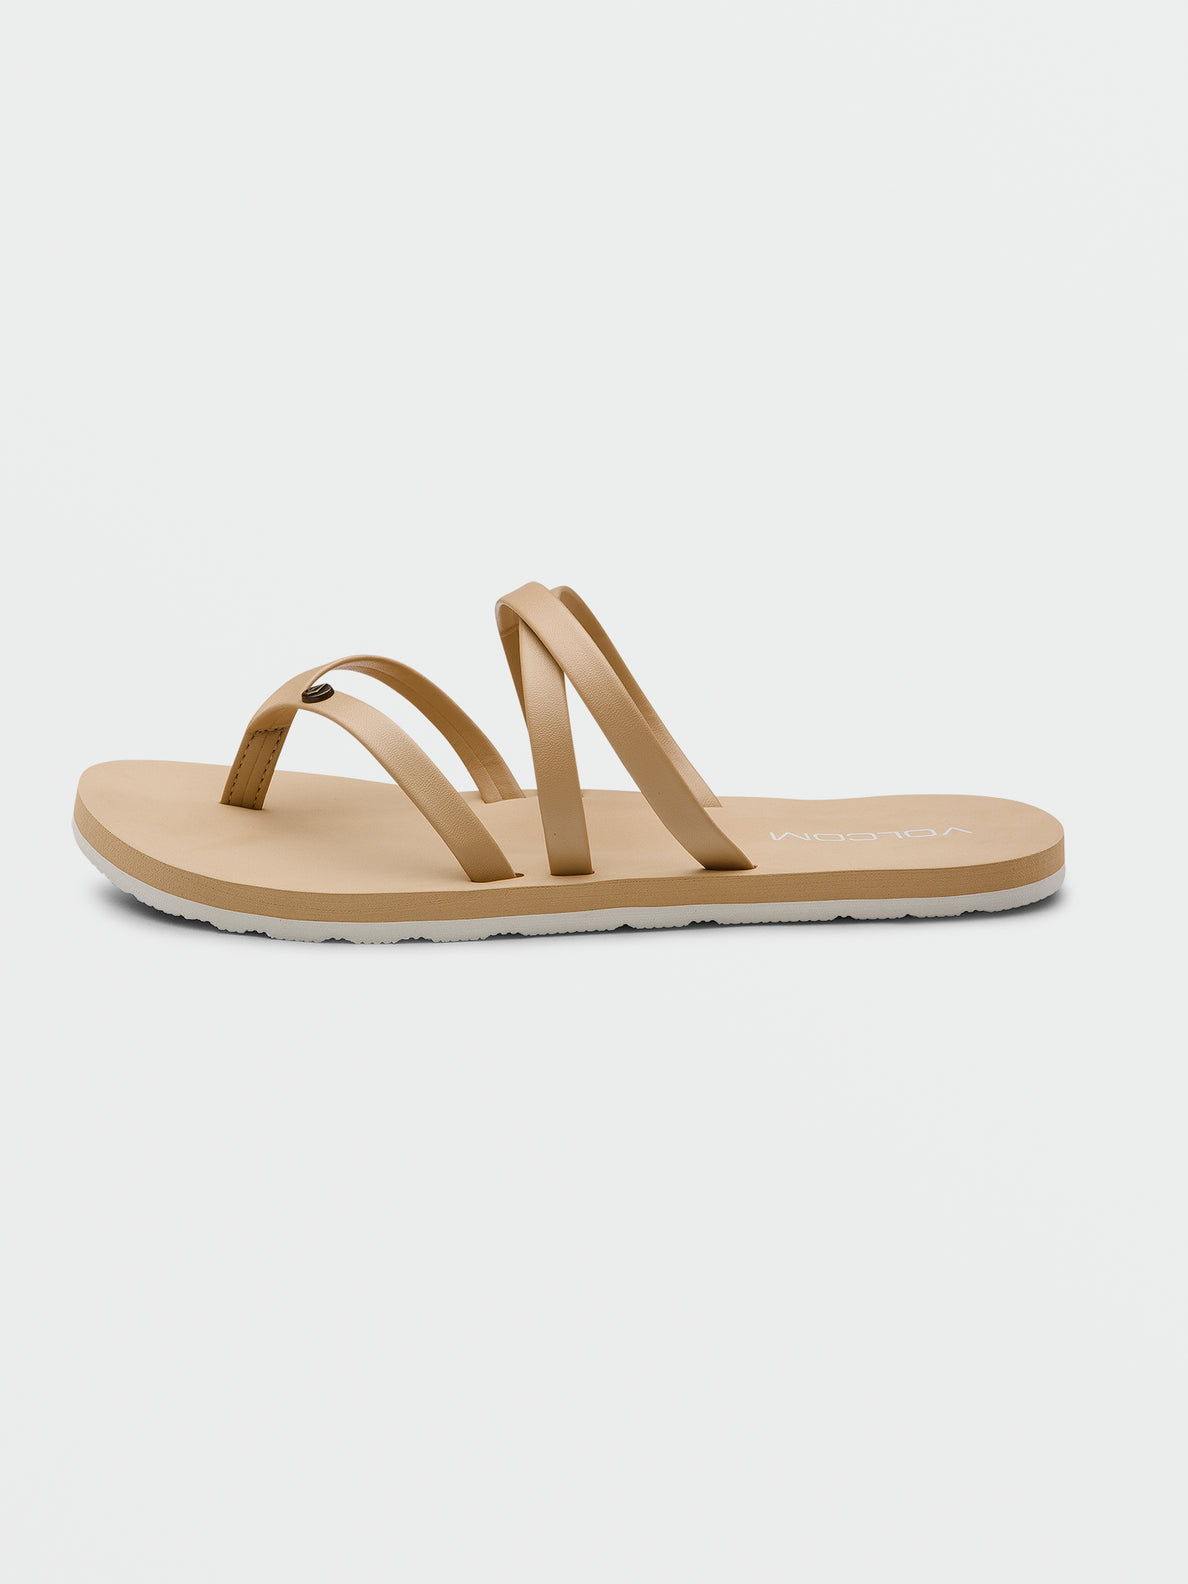 Easy Breezy II Sandals - Hazelnut (W0812353_HZL) [1]